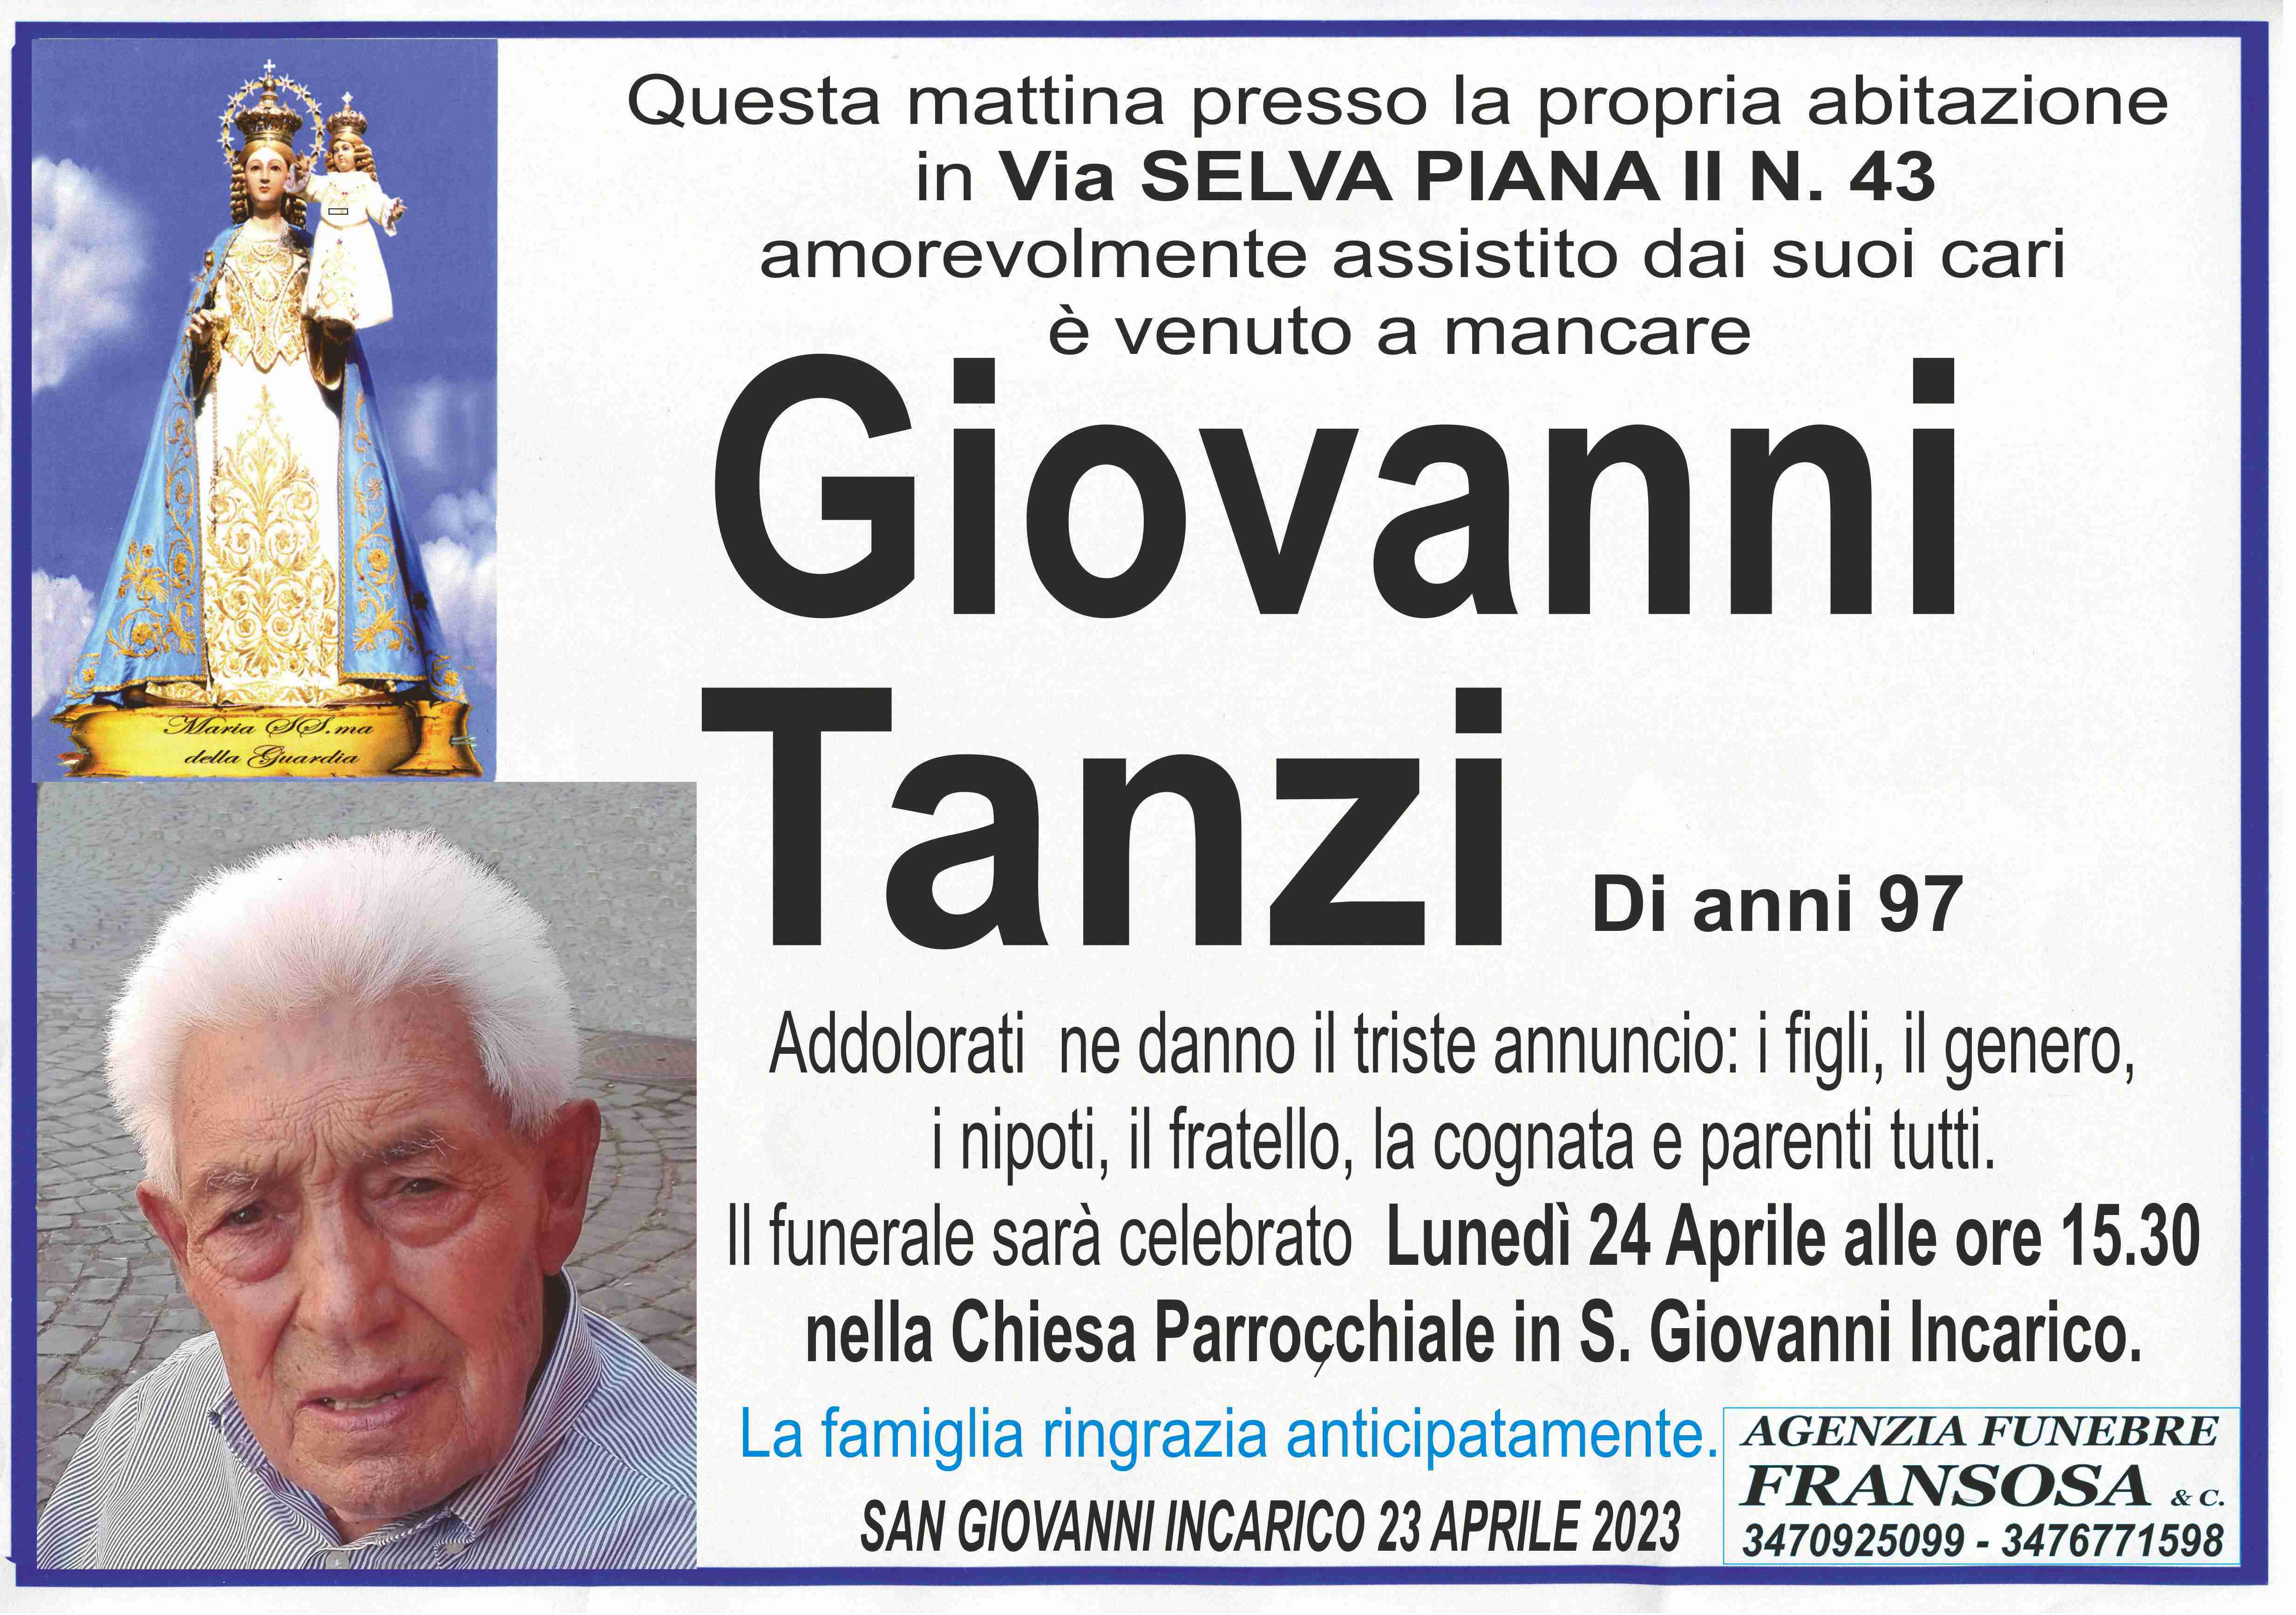 Giovanni Tanzi